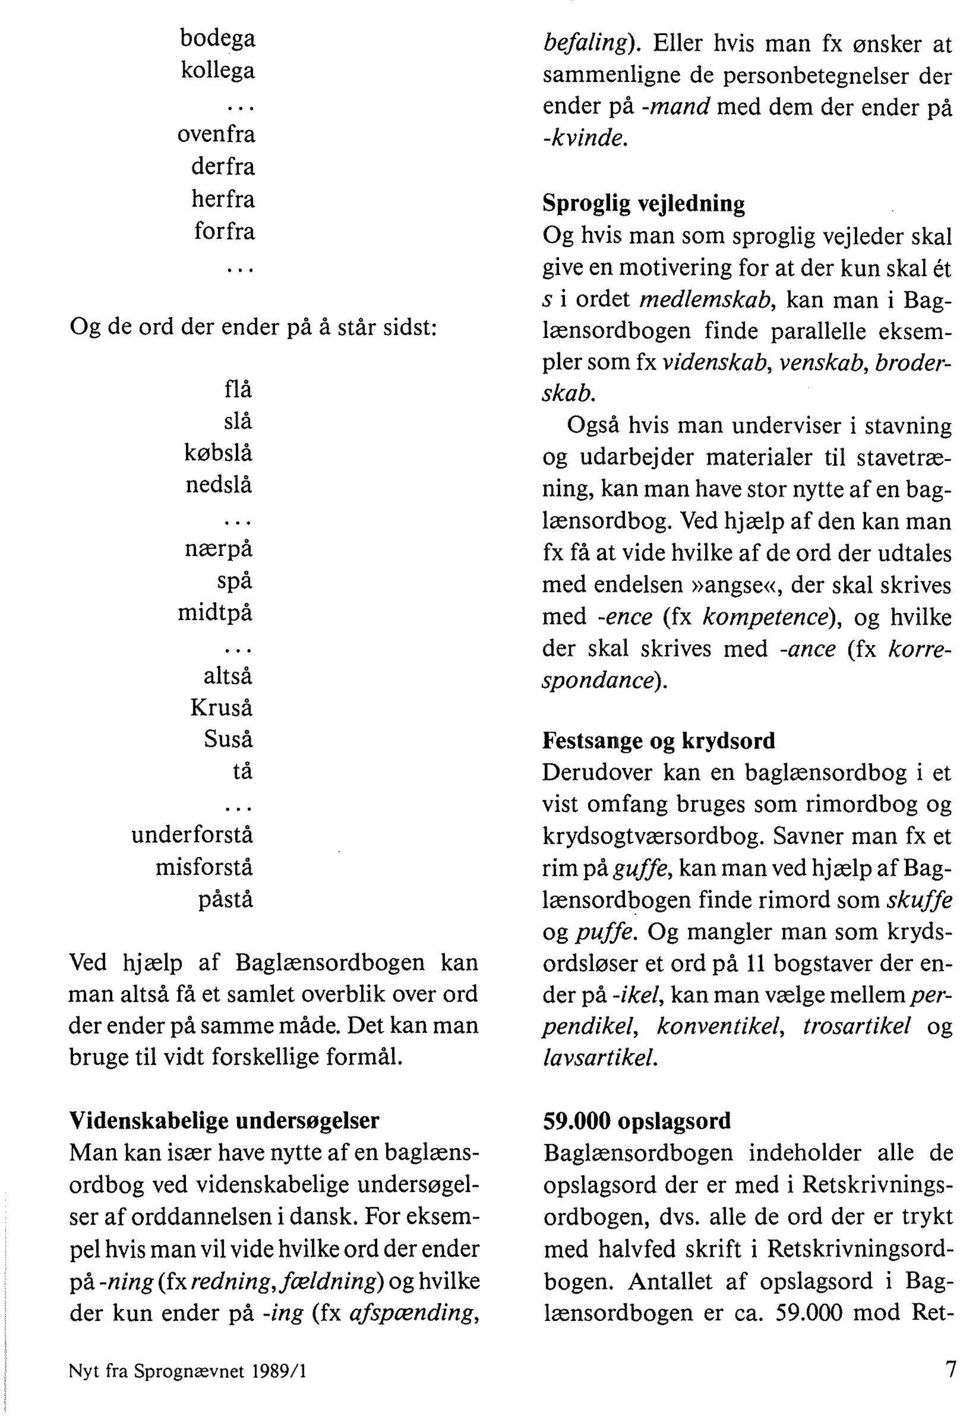 Videnskabelige undersøgelser Man kan især have nytte af en baglænsordbog ved videnskabelige undersøgelser af orddannelsen i dansk.